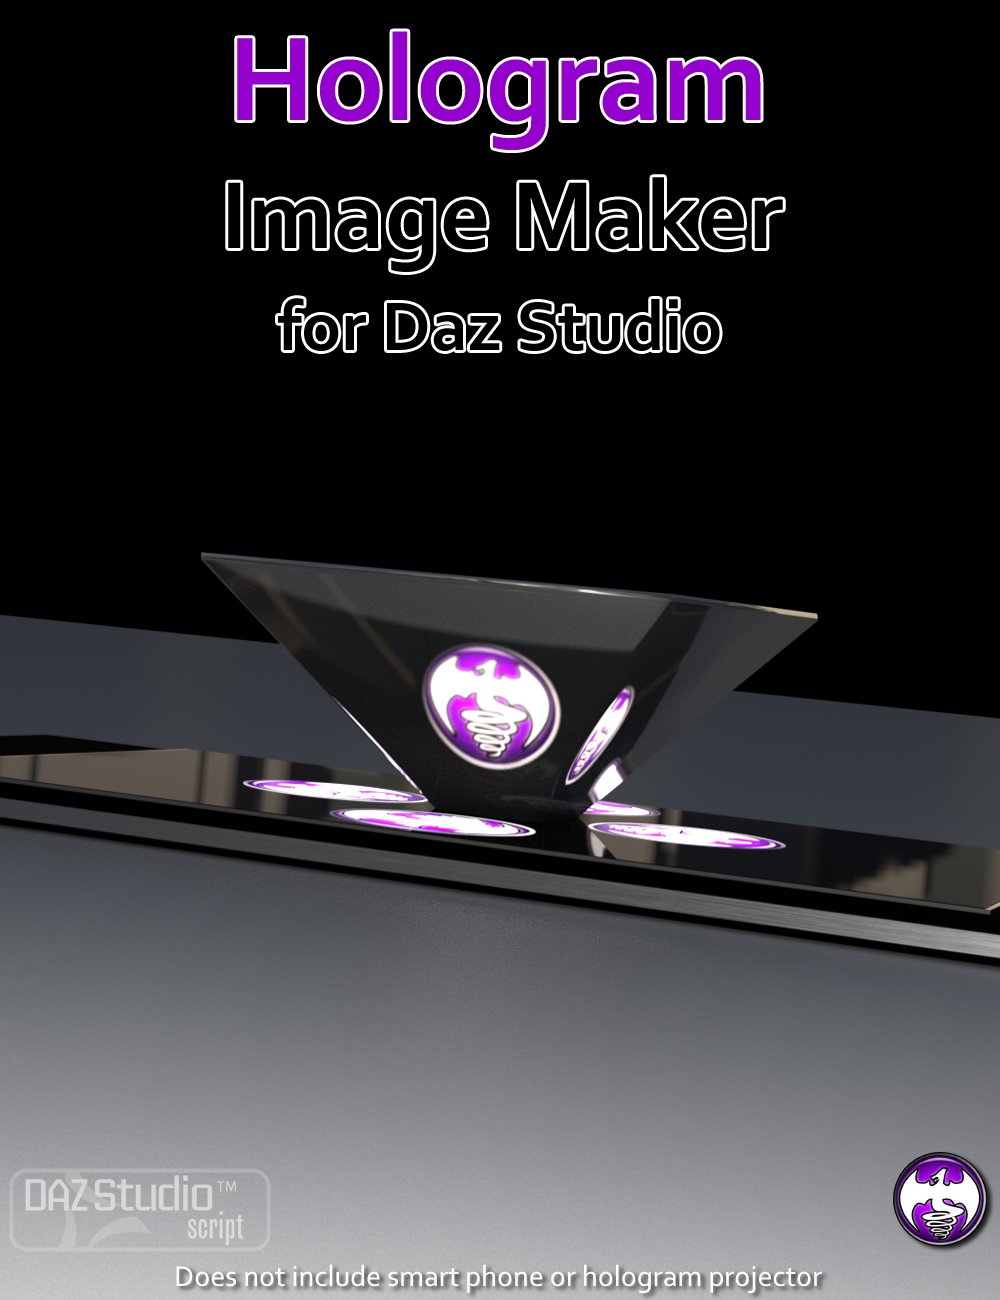 Hologram Image Maker for Daz Studio by: DraagonStorm, 3D Models by Daz 3D